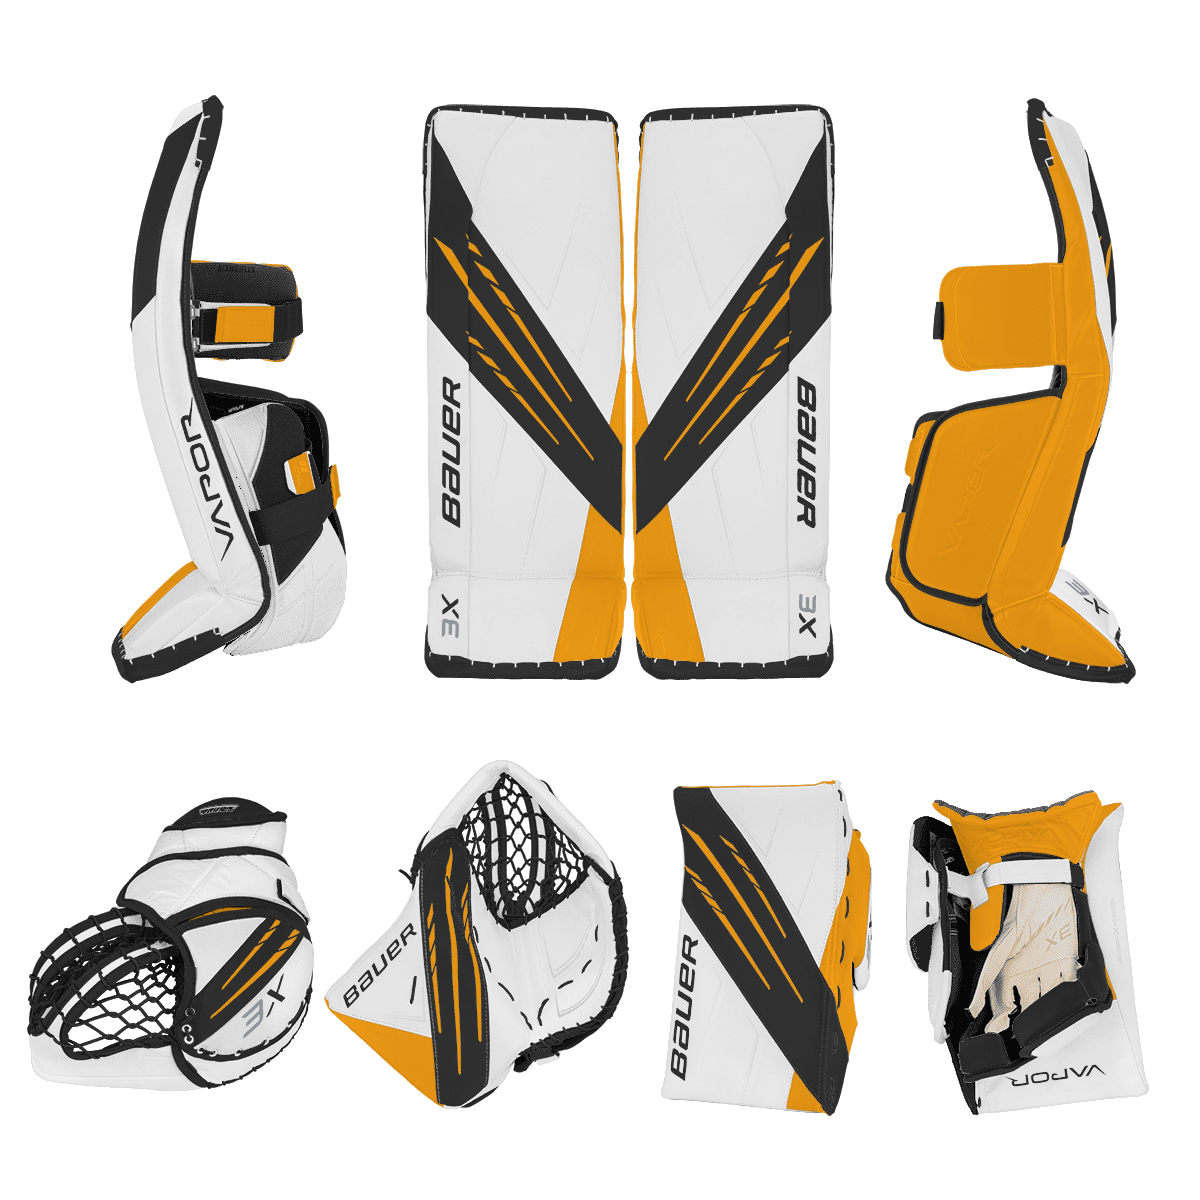 Bauer Vapor 3X Goalie Equipment - Custom Design - Senior Boston Inspiration